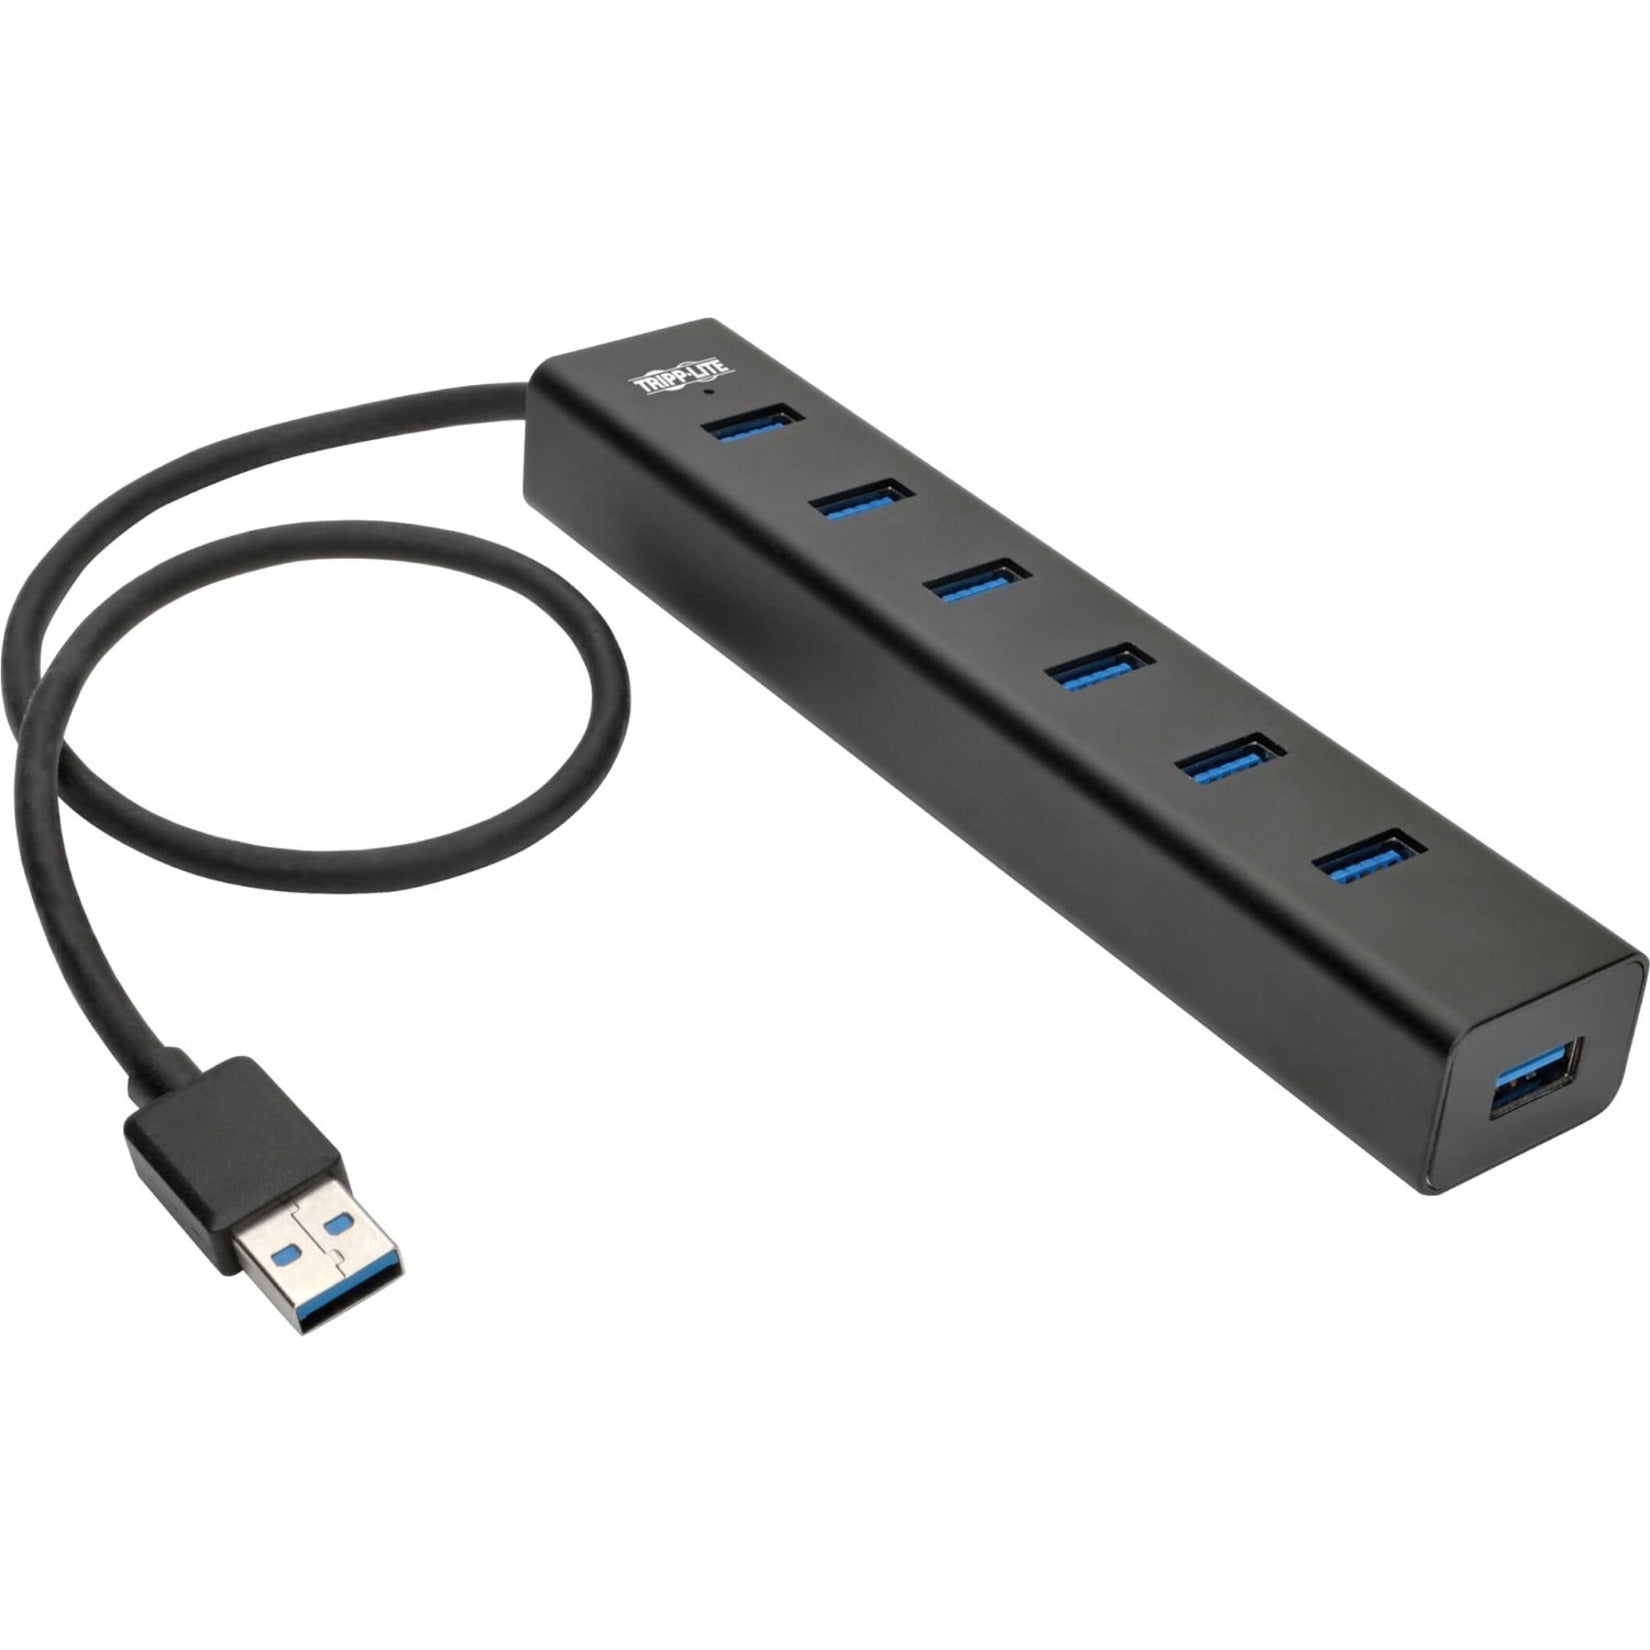 Tripp Lite：_特力_   U360-007-AL-INT: 7-端口 USB-A 迷你集线器，便携式 USB 集线器，带有 7 个 USB 3.2 端口